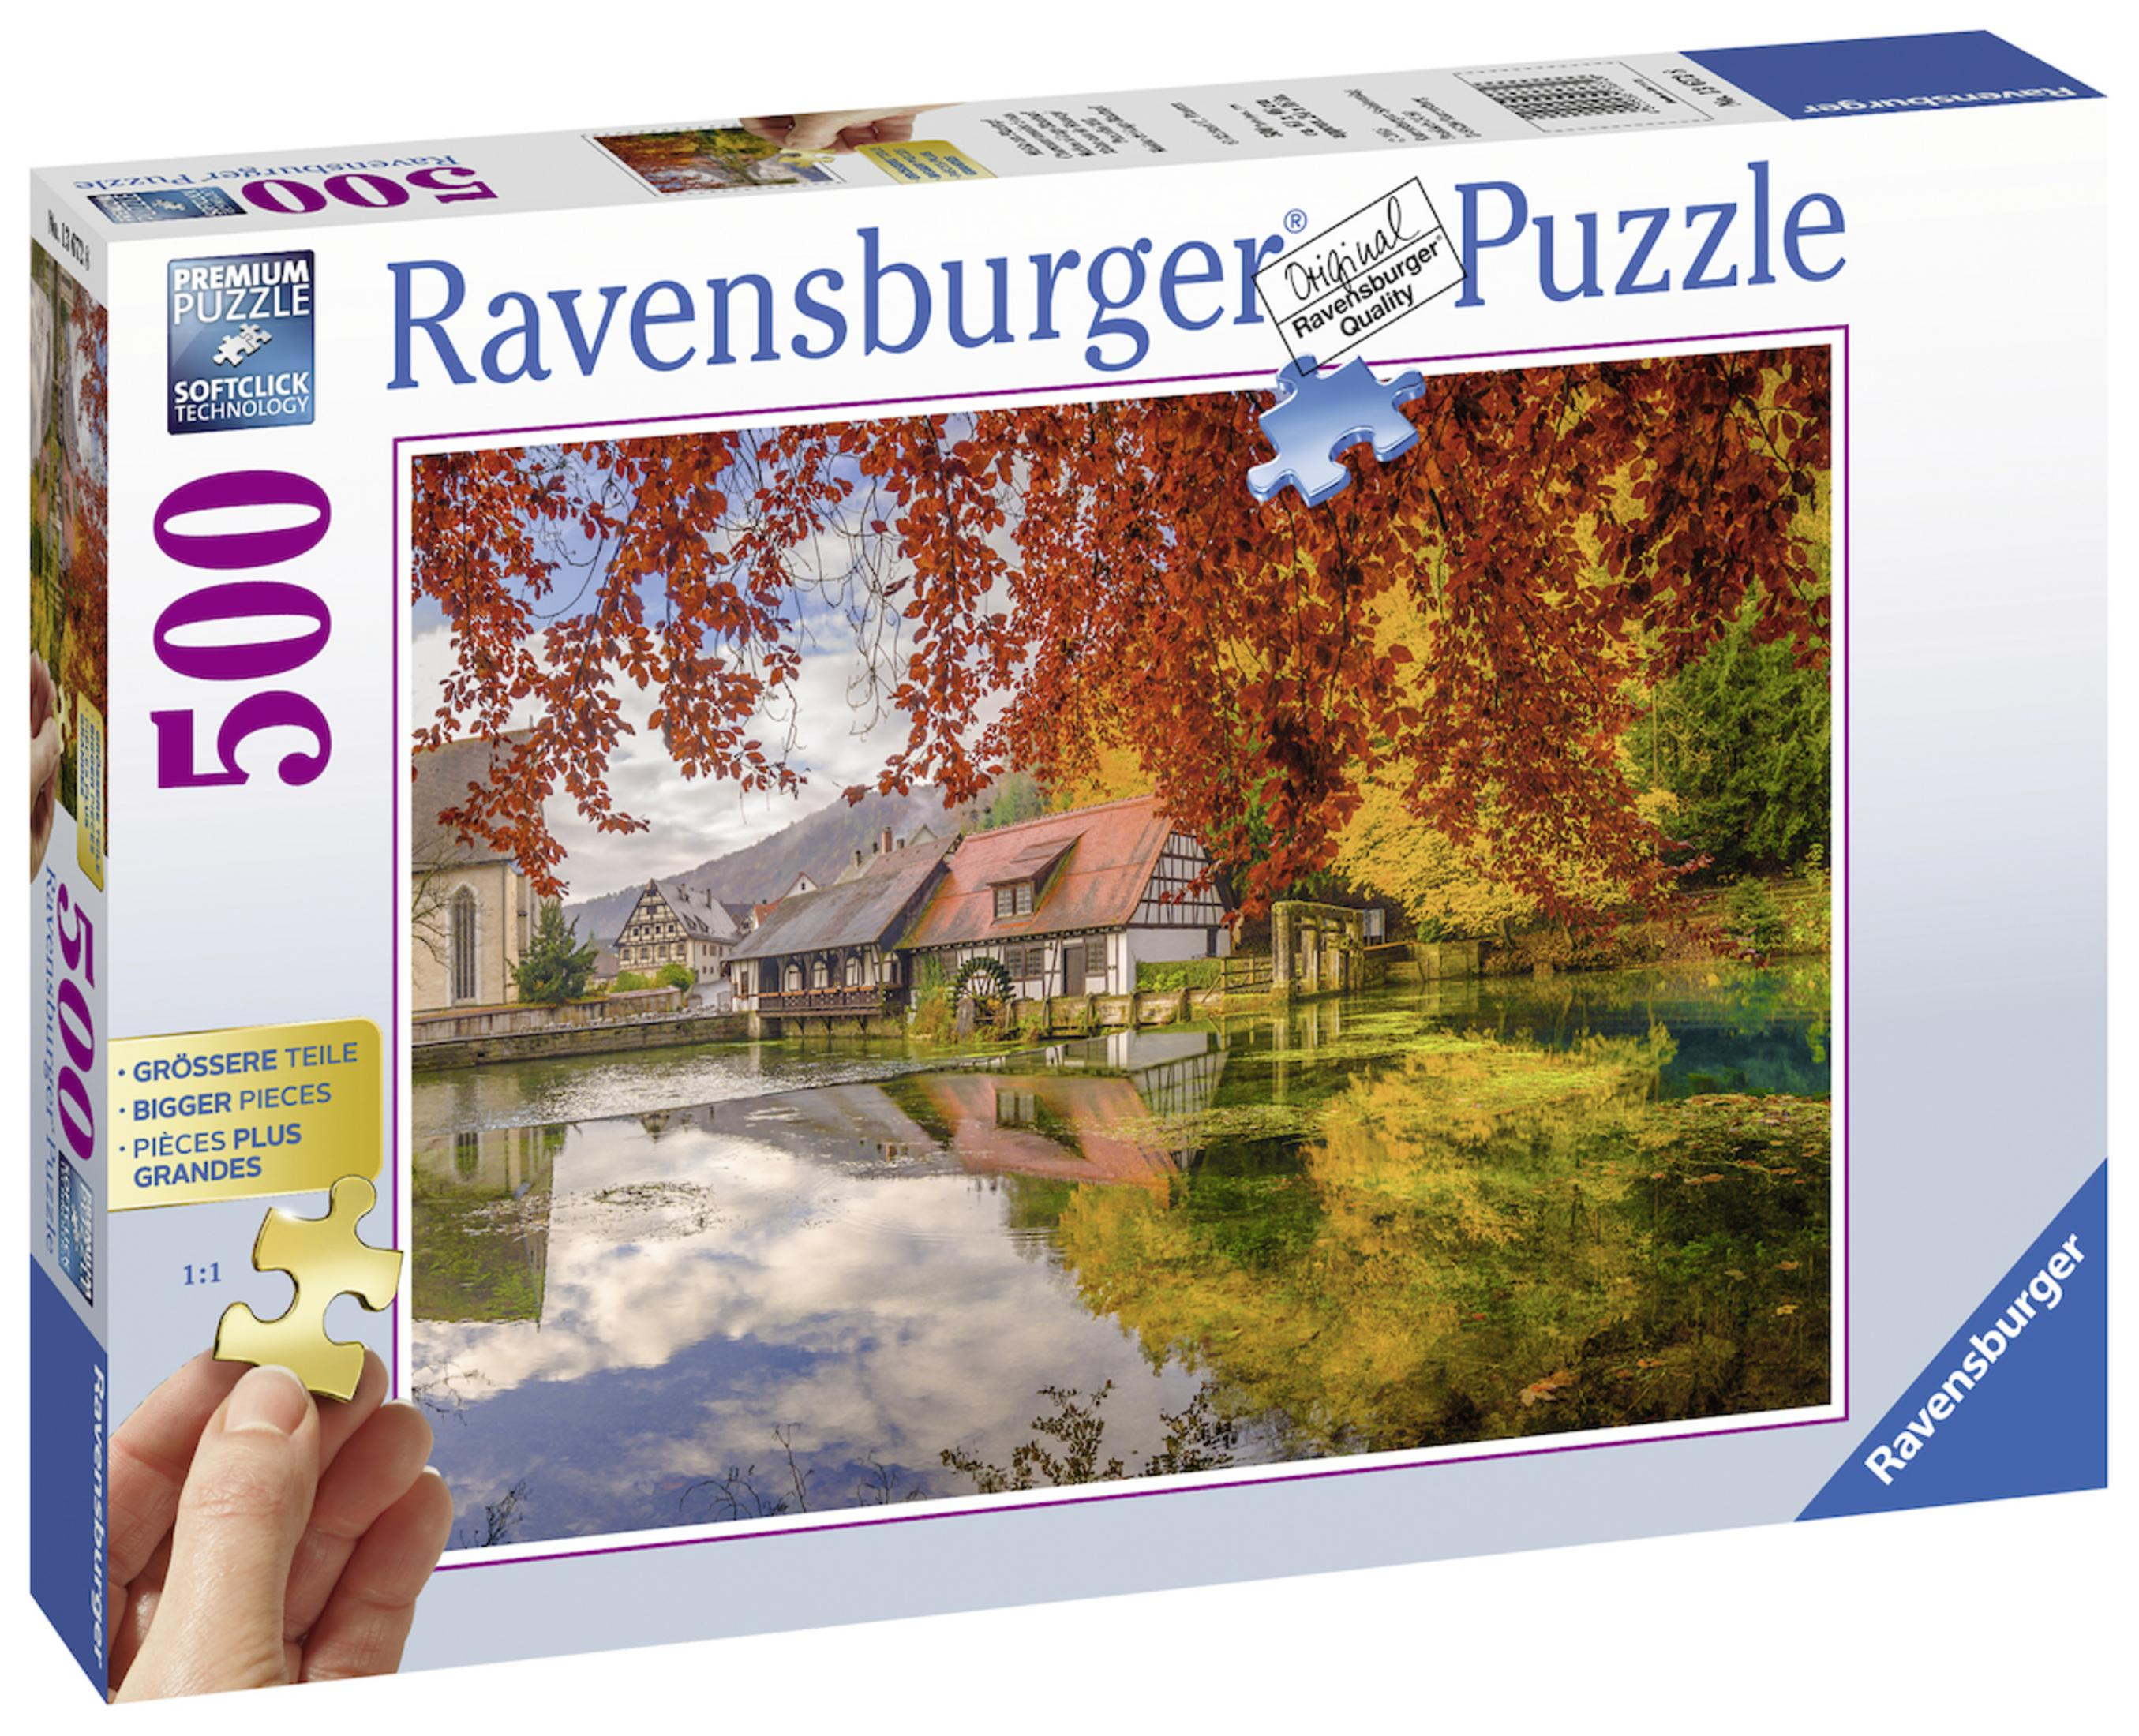 BLAUTOPF AM Puzzle MÜHLE RAVENSBURGER 13672